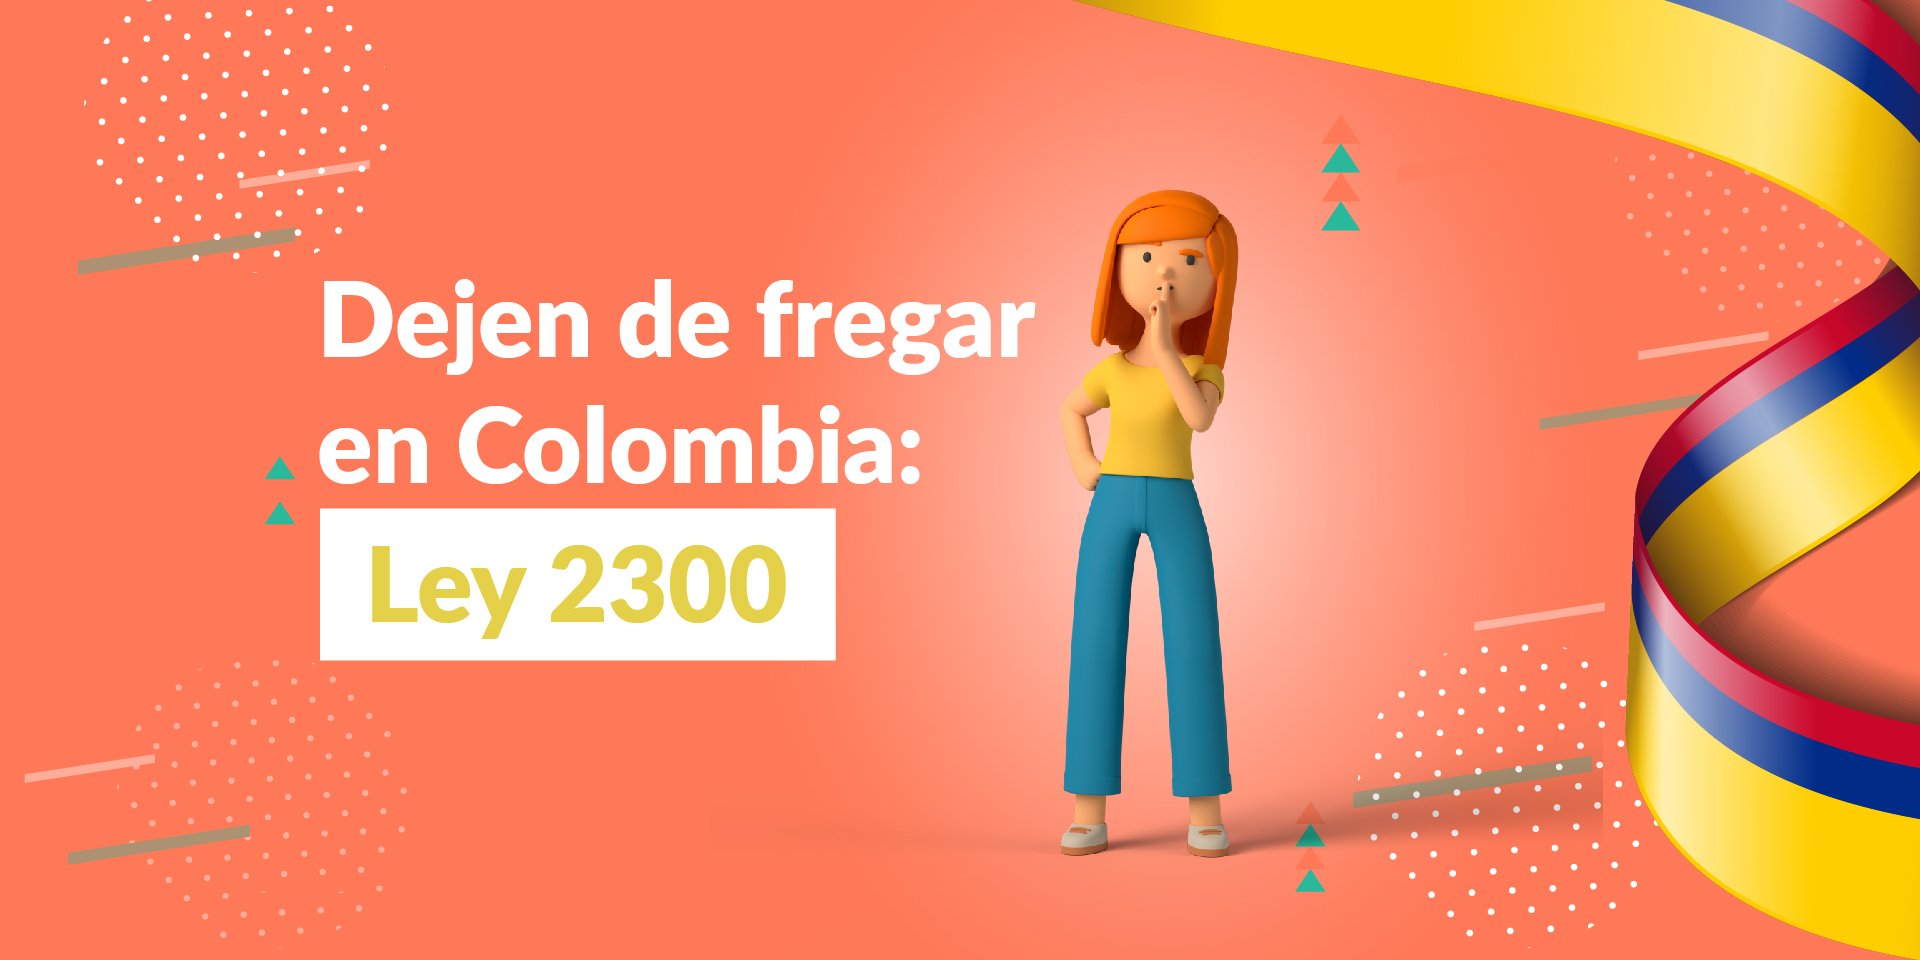 Dejen de fregar en Colombia: Ley 2300